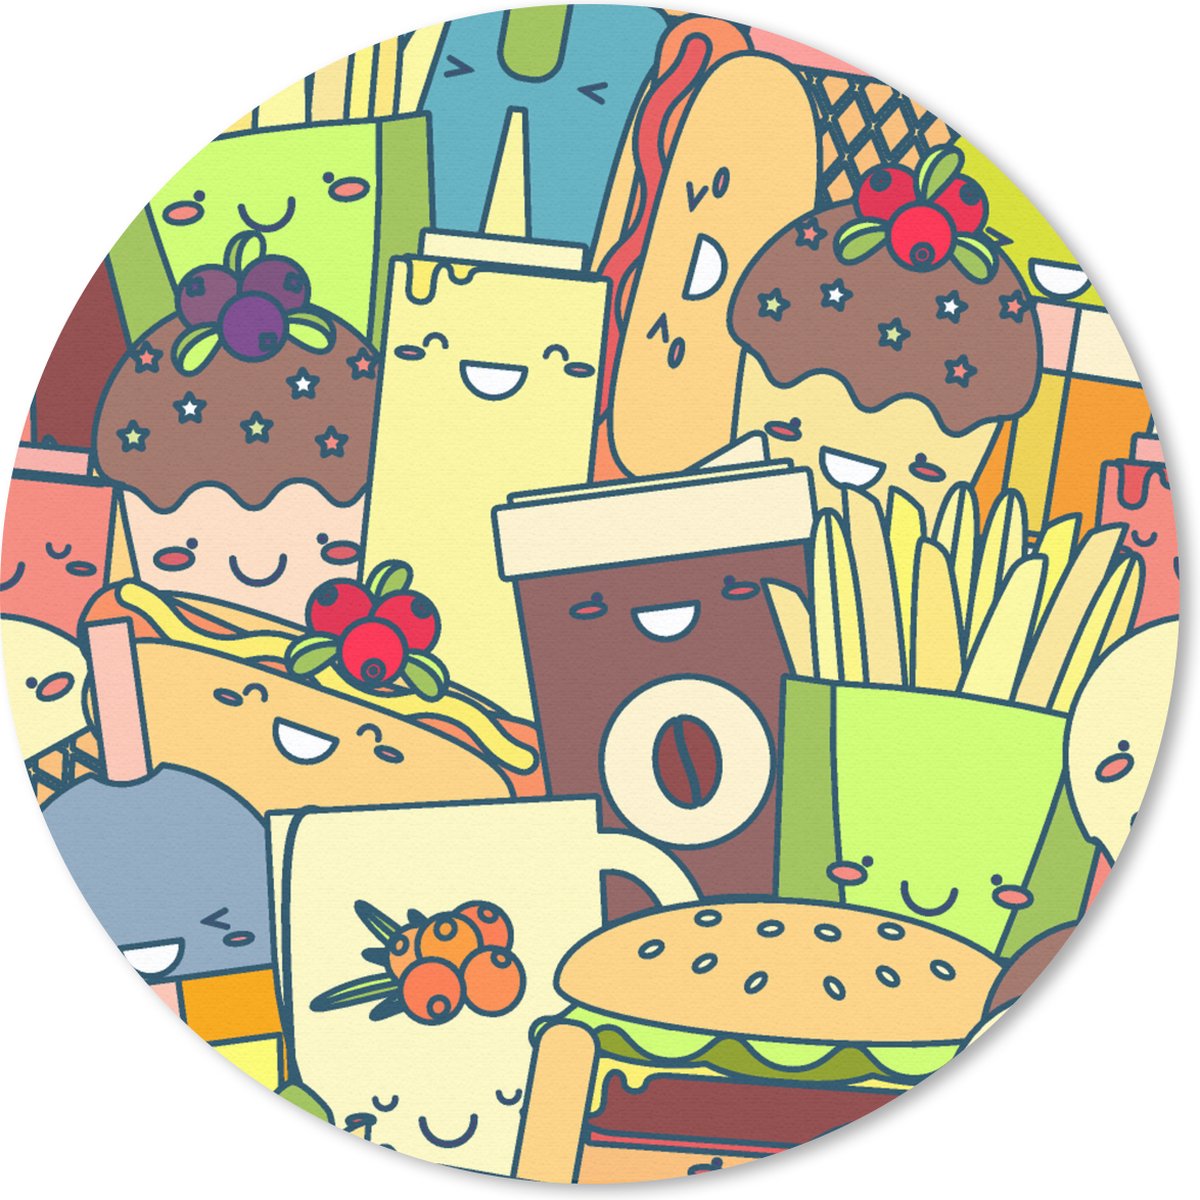 Muismat - Mousepad - Rond - Kawaii - Patronen - Fast Food - 20x20 cm - Ronde muismat